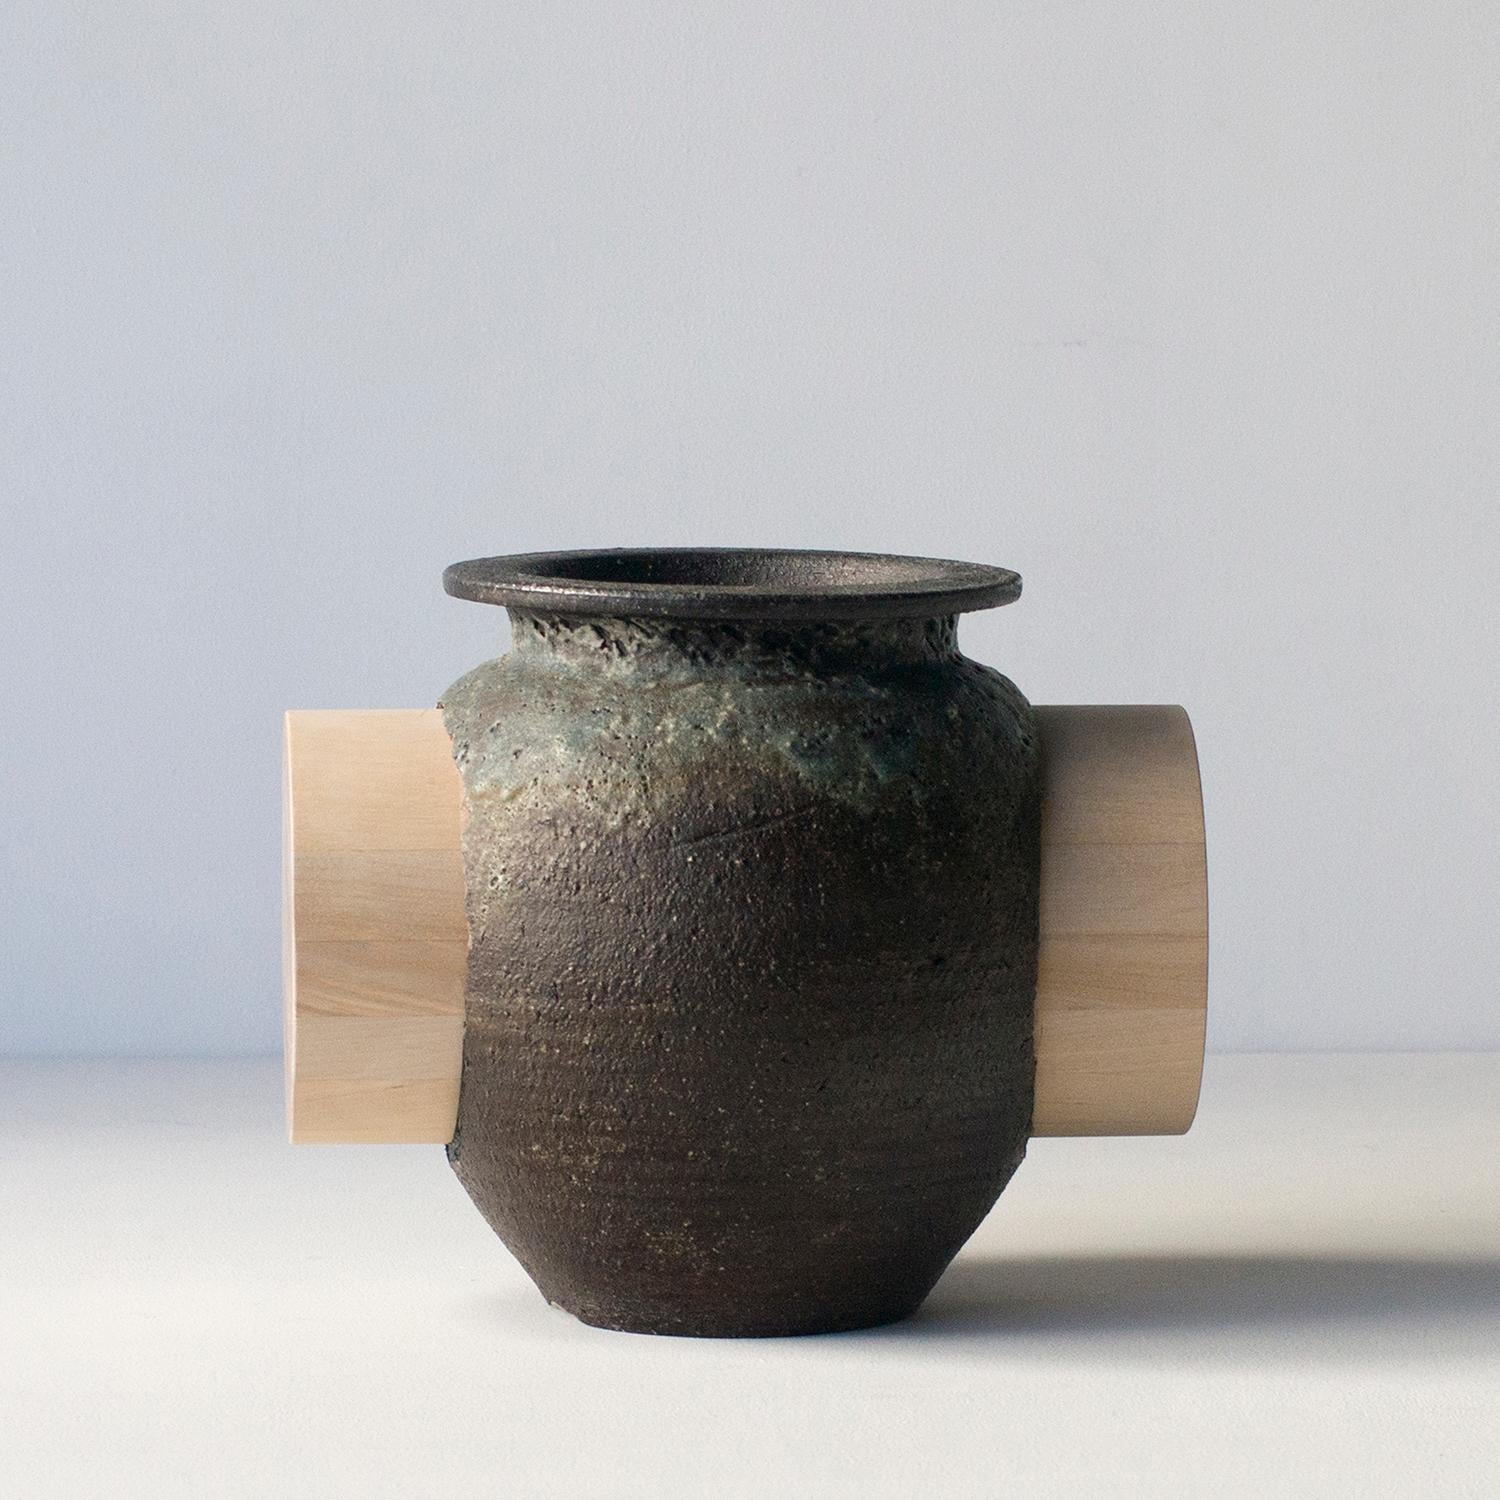 Cette série de céramiques est une œuvre unique de Norihiko Terayama. 
Il s'agit d'une série d'exercices de relations avec la fonction et la décoration. L'artiste a essayé de faire une décoration qui va à l'encontre de la fonction originale du